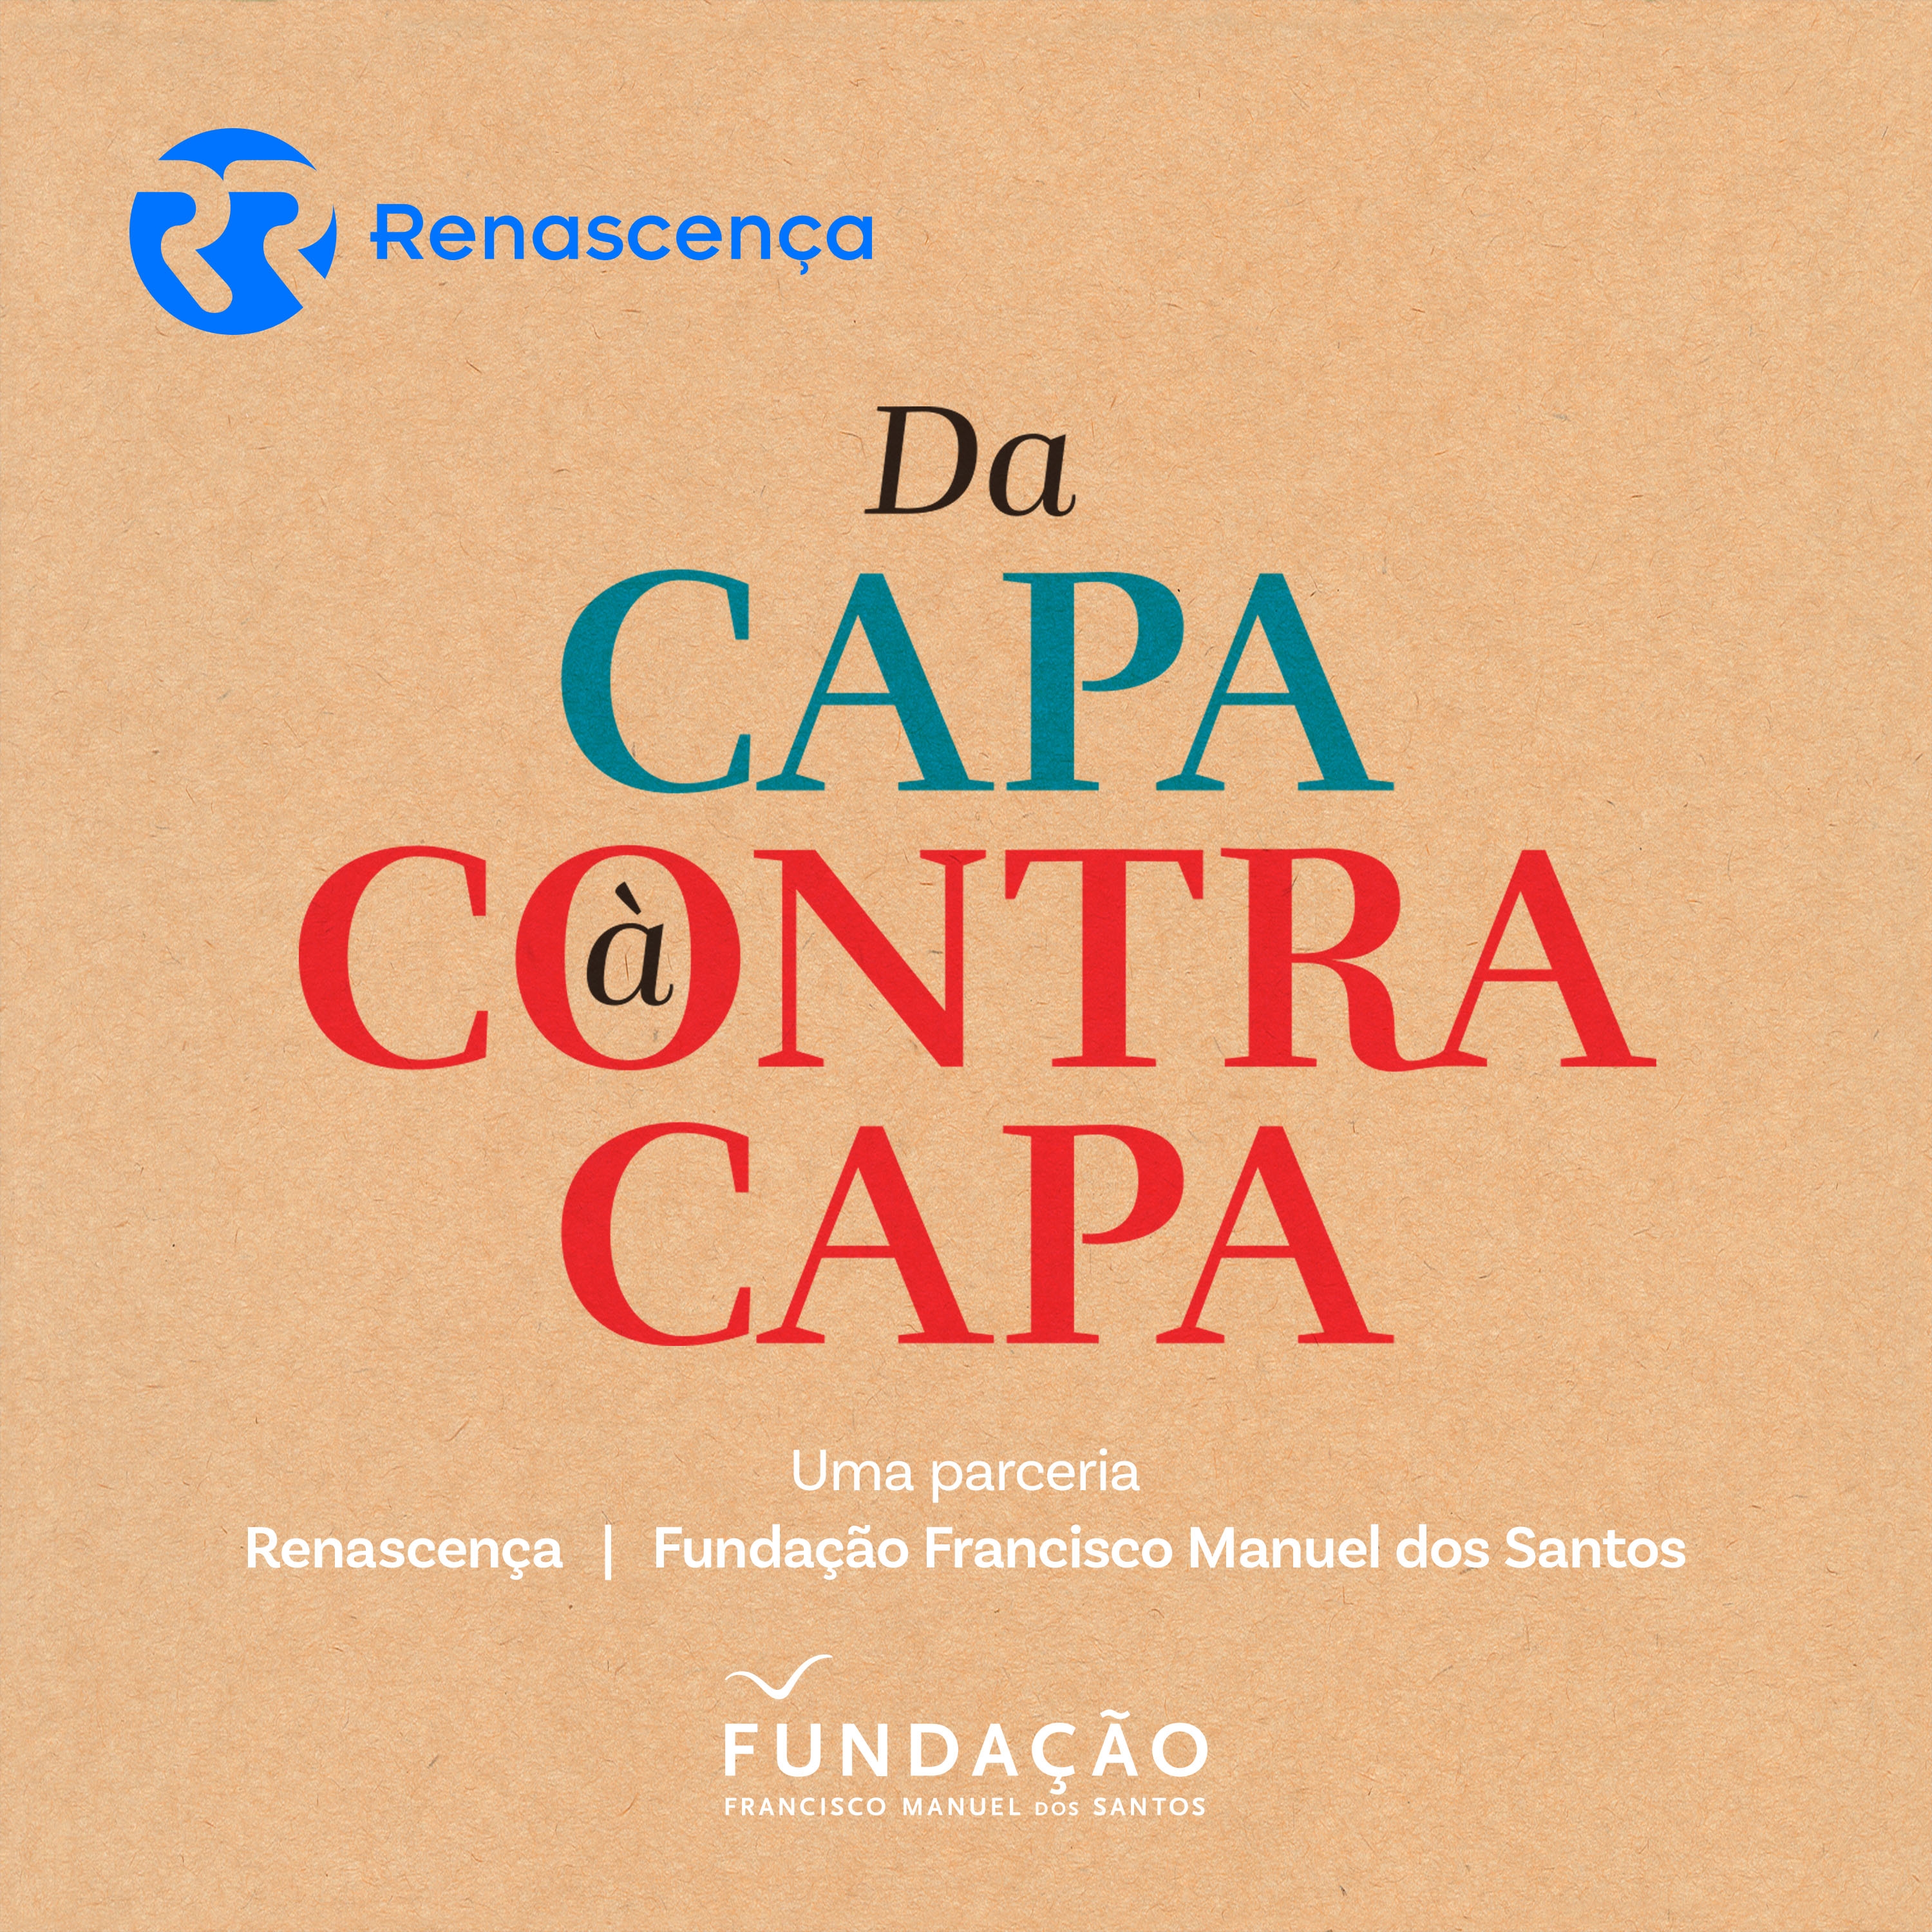 Da Capa à Contracapa - A Rede GPS - Global Portuguese Scientists - 18/11/2017